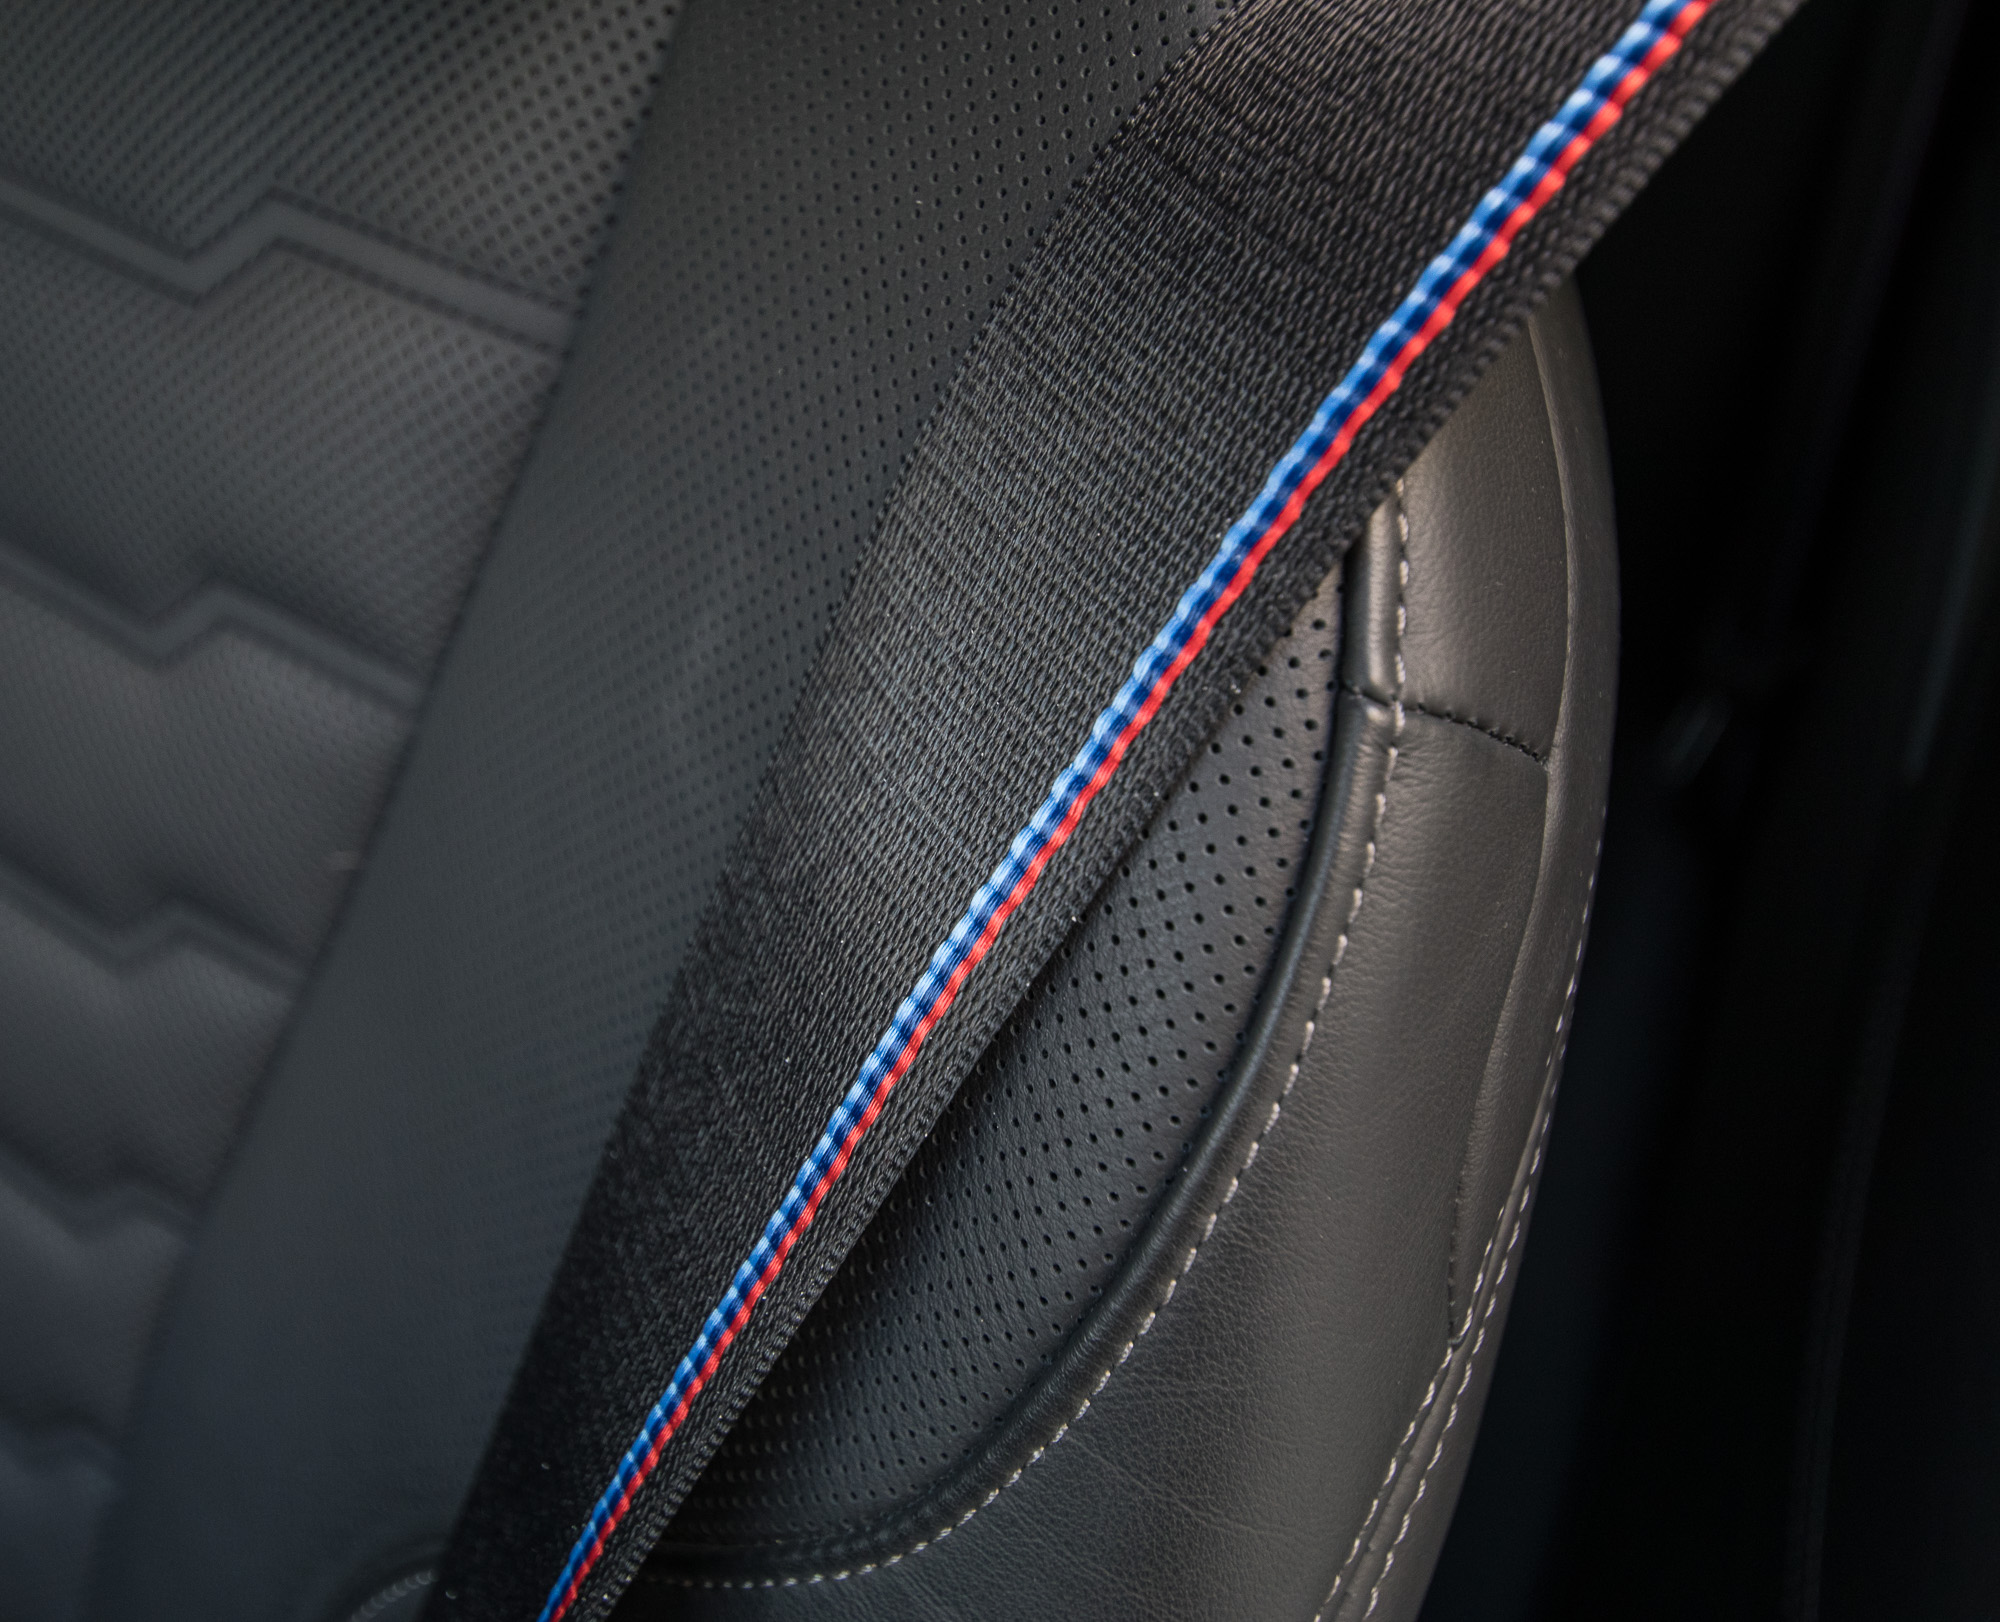 BMW M850i 2019 test